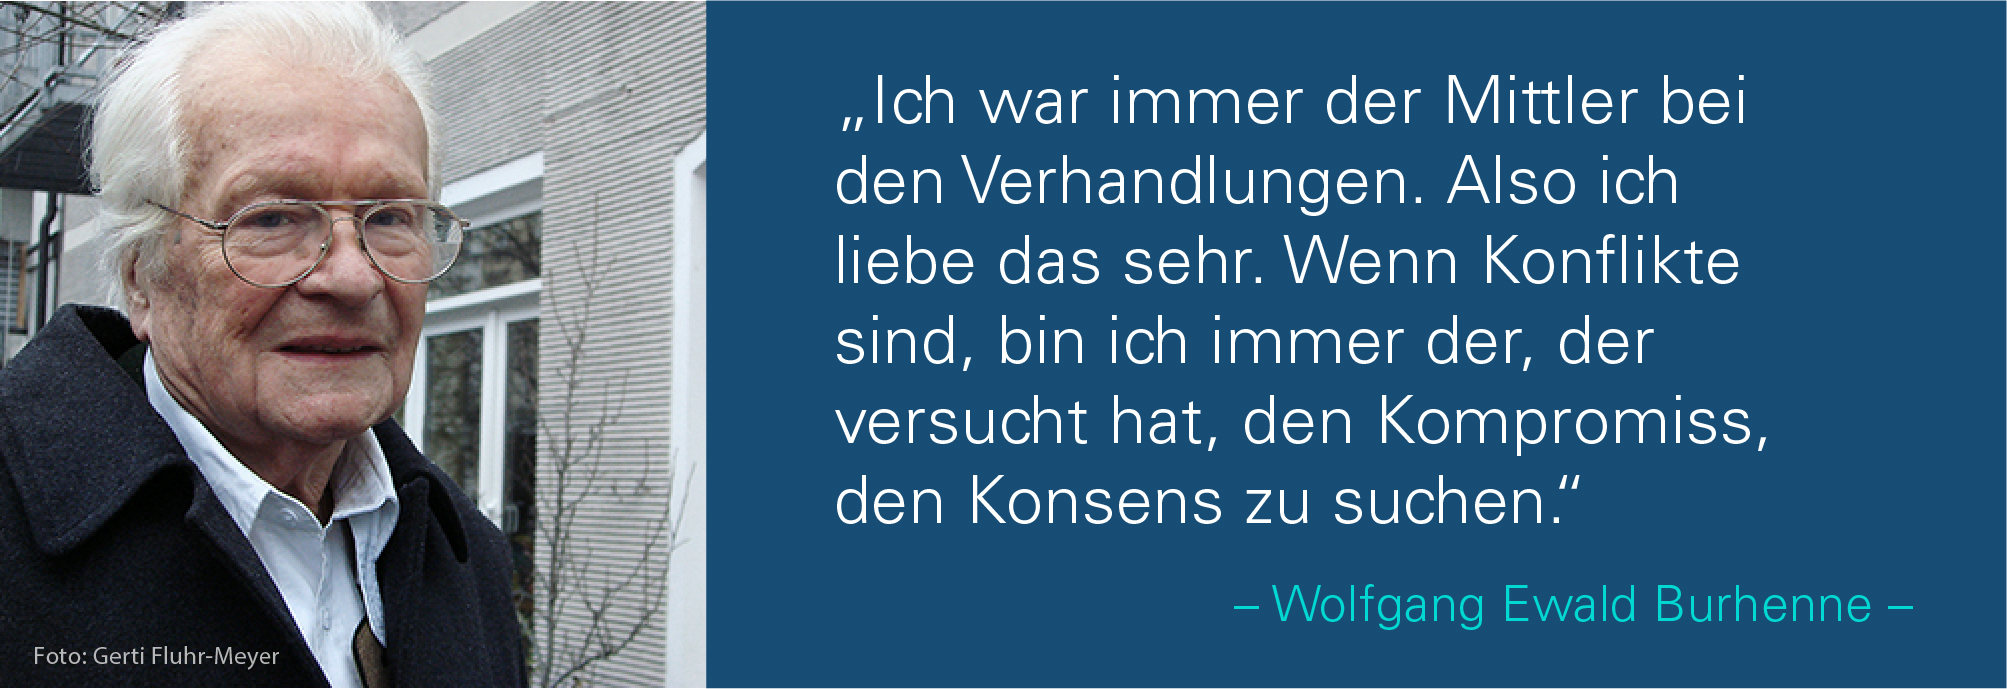 Porträt von Wolfgang Ewald Burhenne mit dem Zitat: Ich war immer der Mittler bei den Verhandlungen. Also
ich liebe das sehr. Wenn Konflikte sind, bin ich immer der, der versucht hat, den Kompromiss, den Konsens zu suchen.